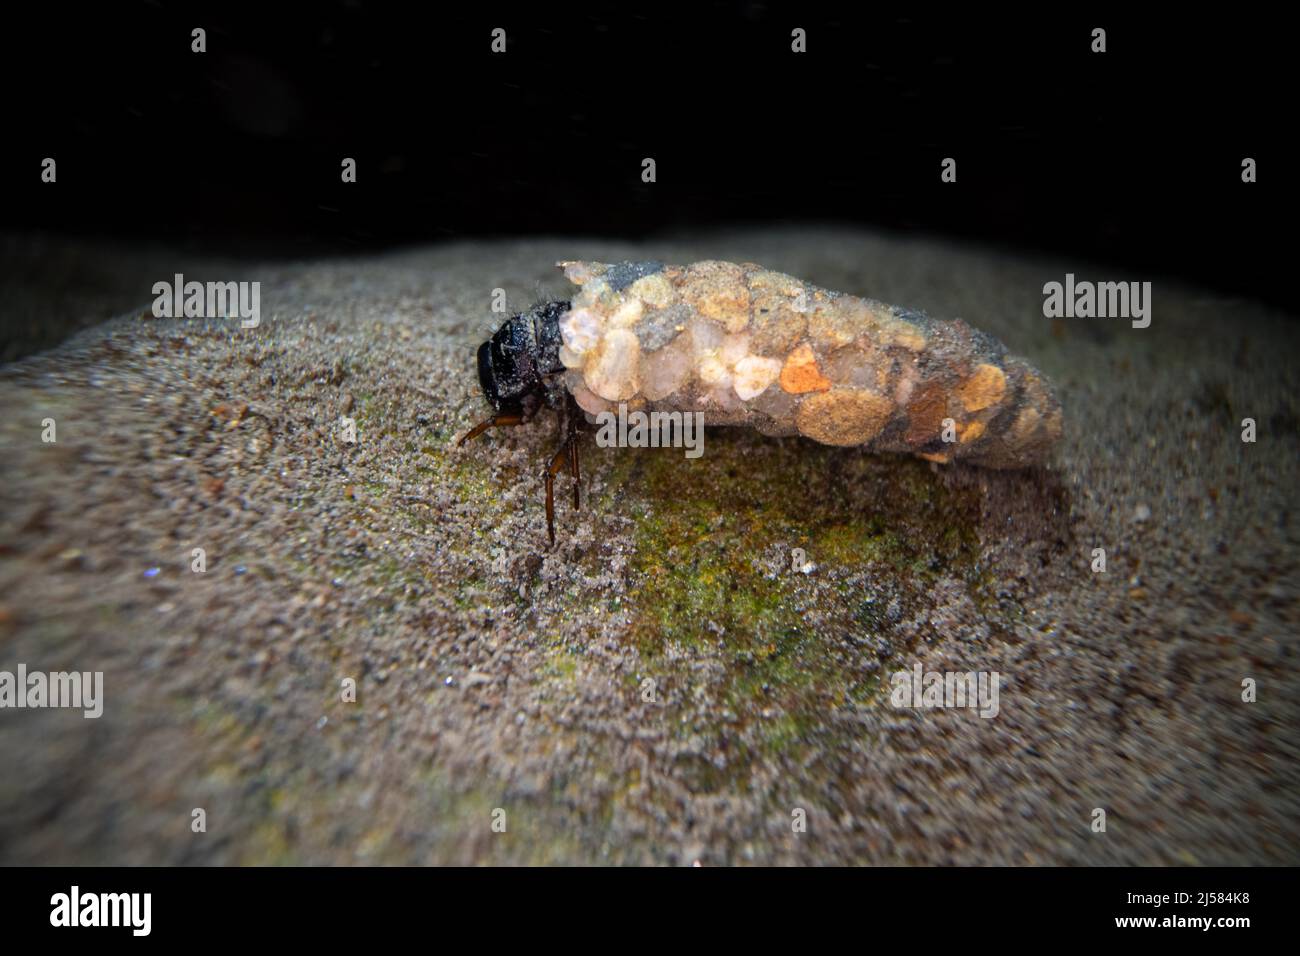 Koecherfliegen (Trichoptera), larve am Gewaessergrund, Unterwasseraufnahme, Essen, Deutschland Foto Stock